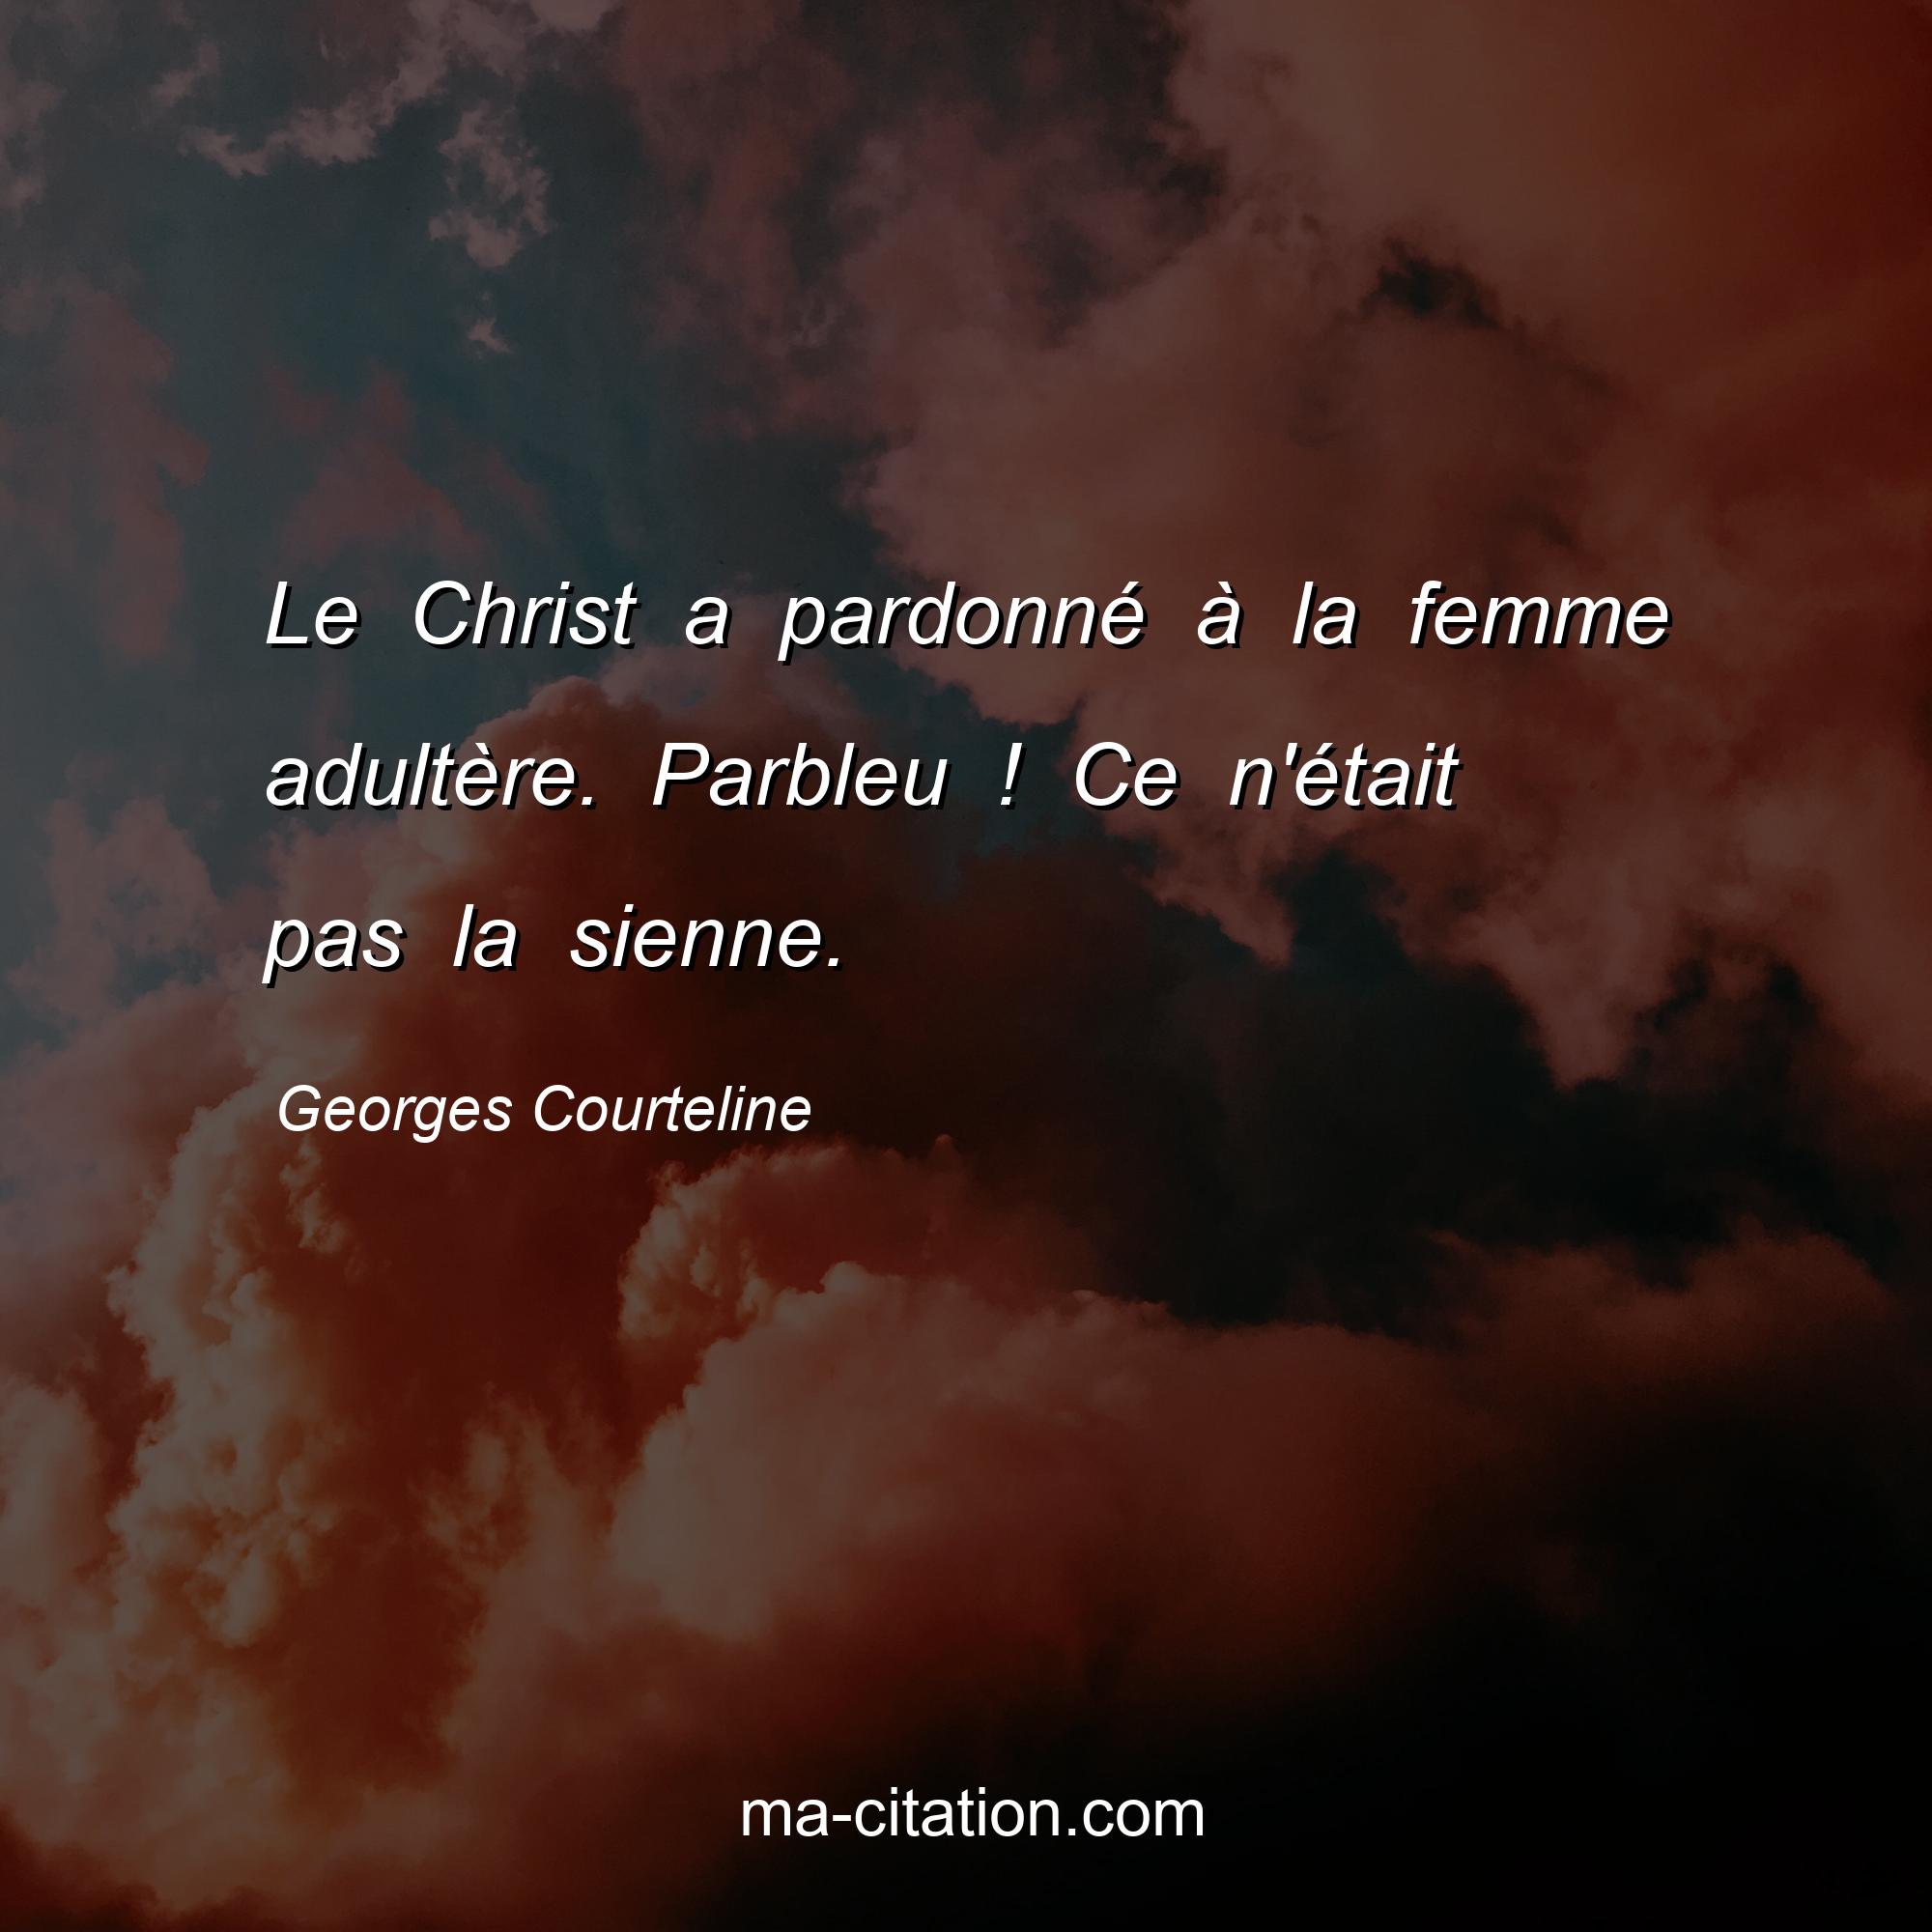 Georges Courteline : Le Christ a pardonné à la femme adultère. Parbleu ! Ce n'était pas la sienne.